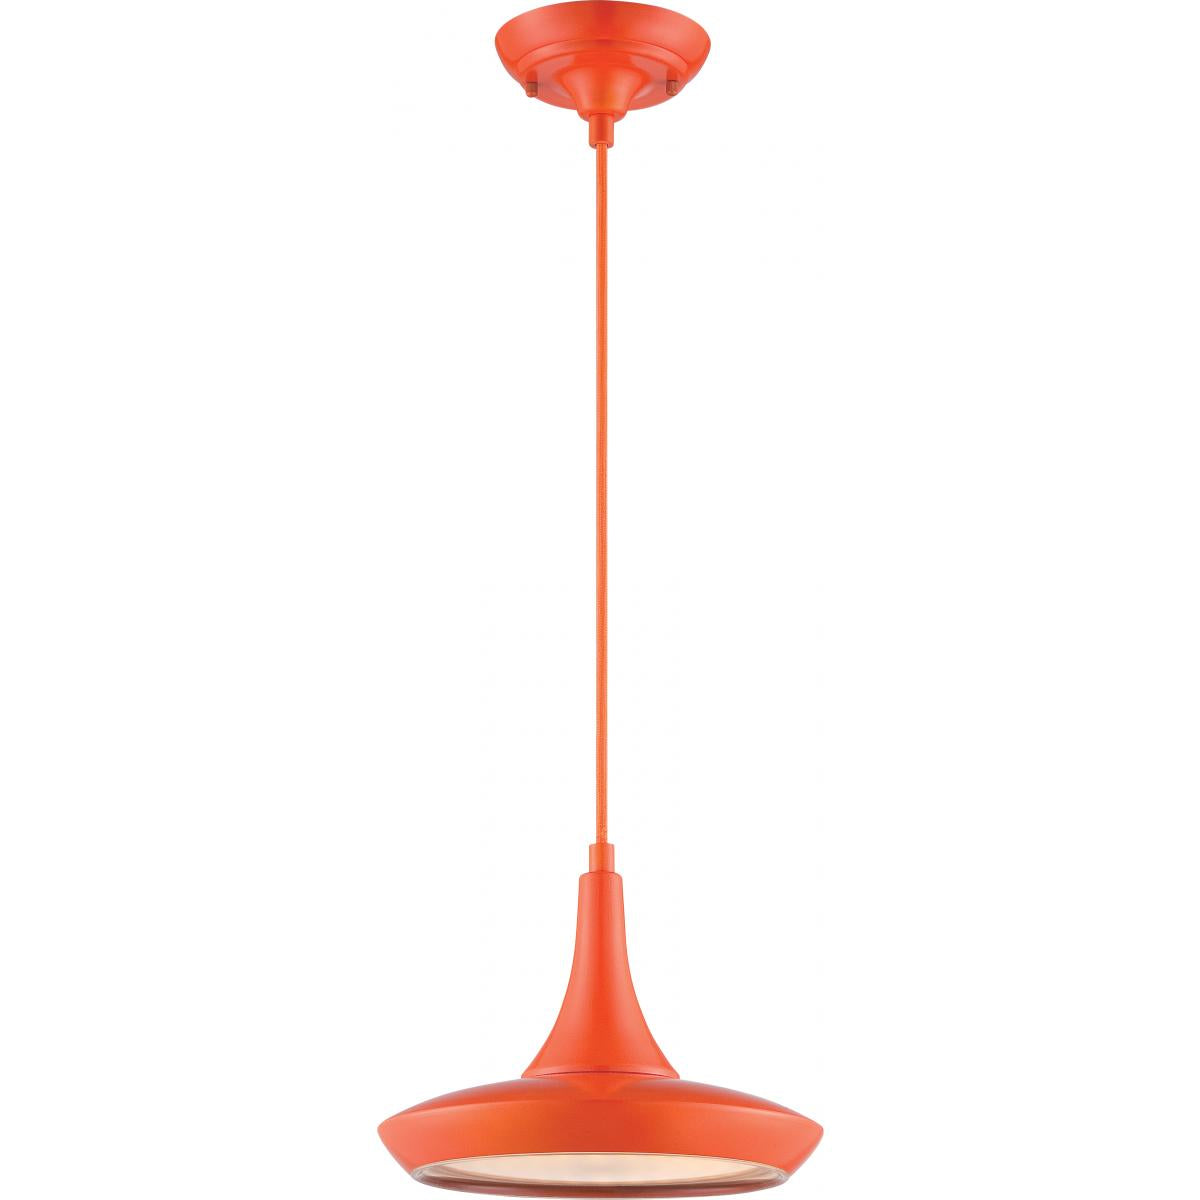 Fantom - LED Pendant with Rayon Cord - Orange Finish